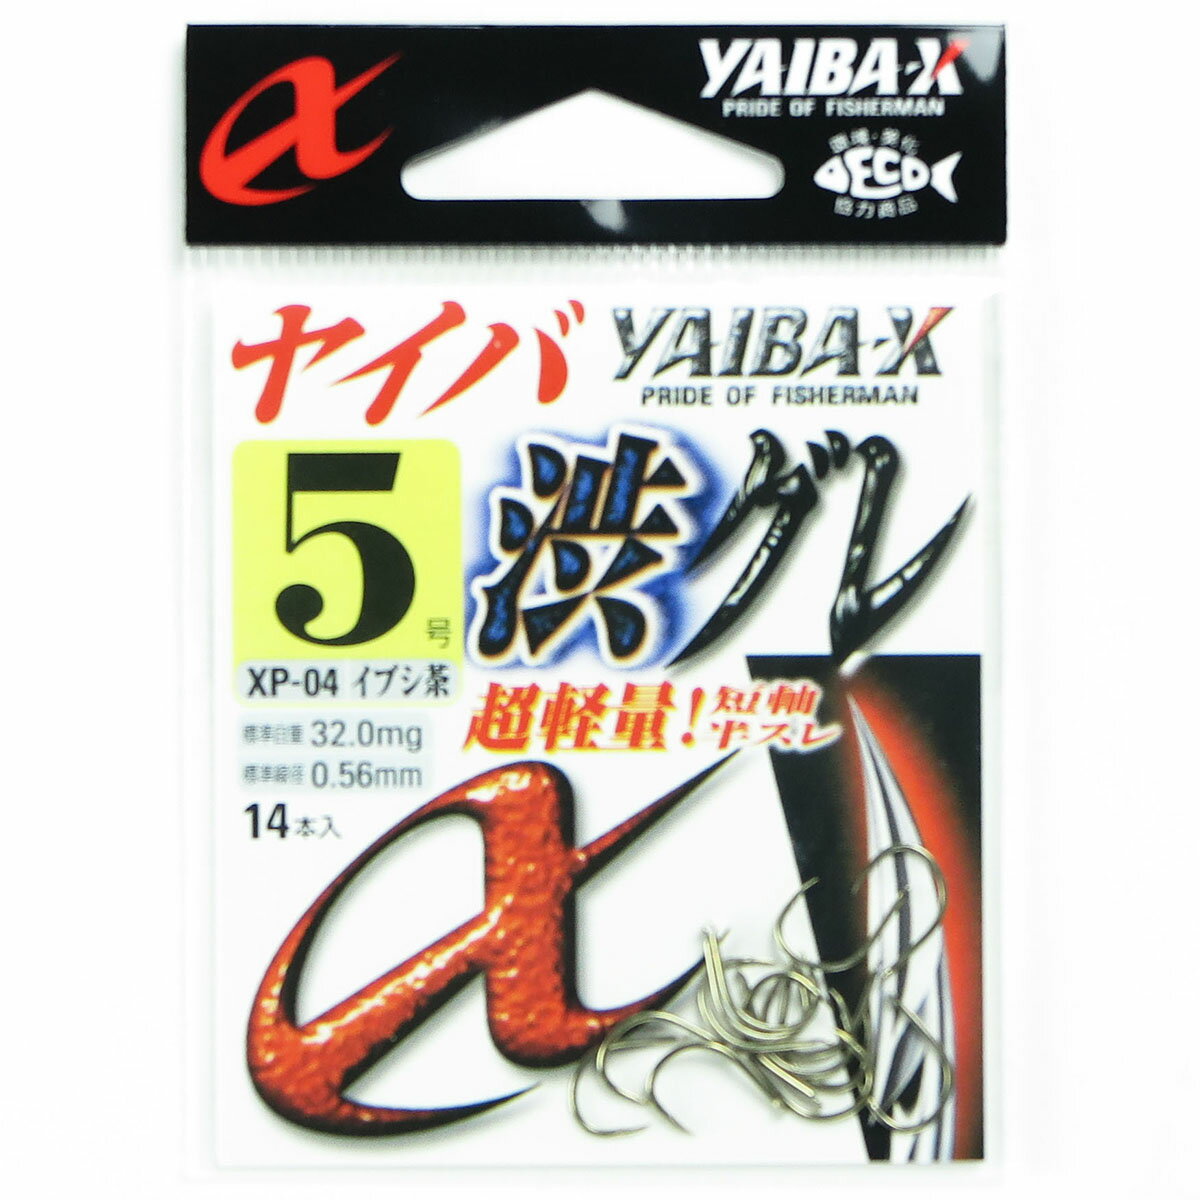 「 ささめ針 SASAME XP-04 ヤイバ渋グレ 5号 14本入 茶 」  釣り 釣り具 釣具 釣り用品